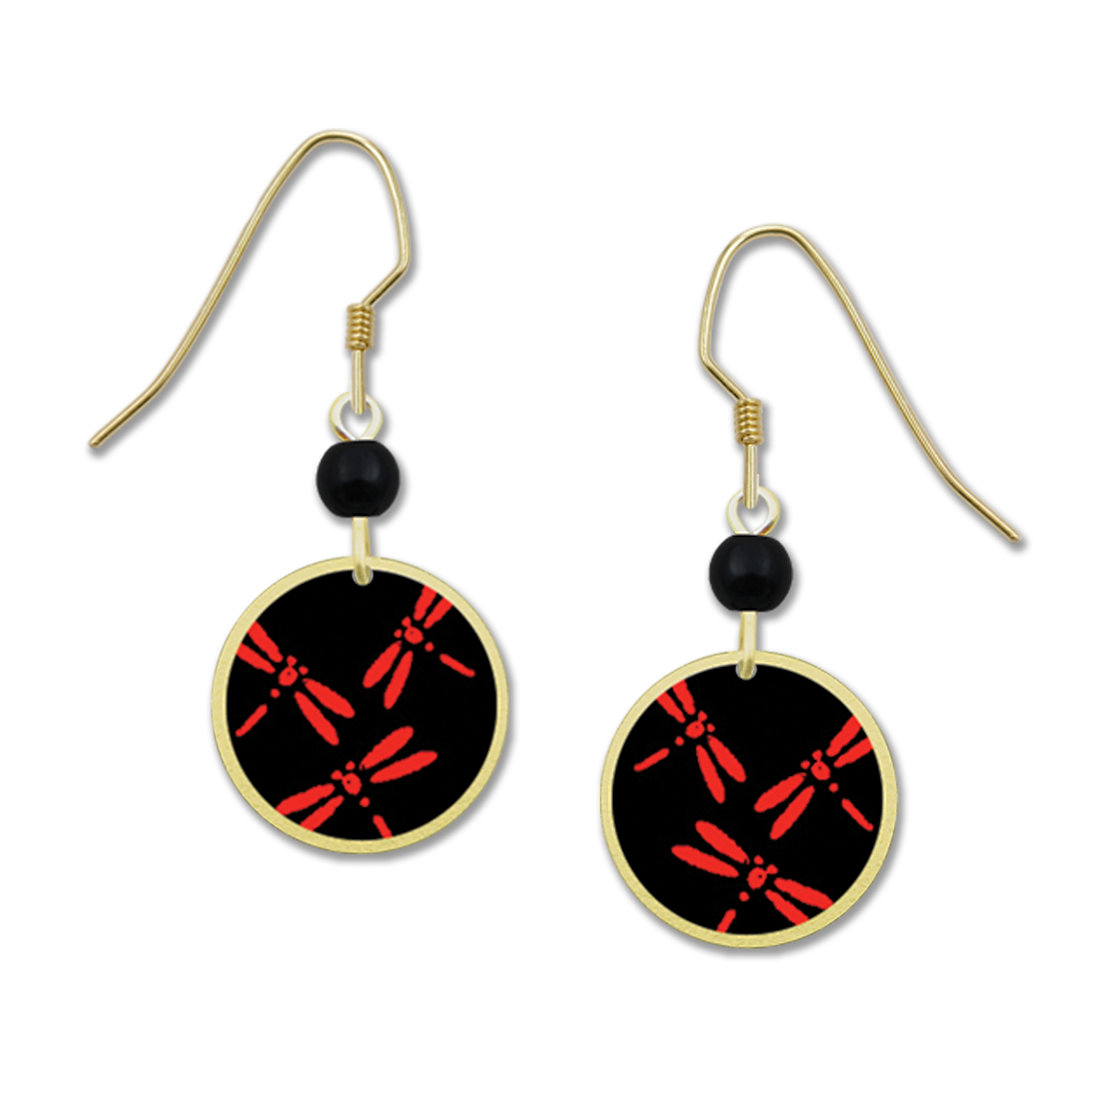 Red Dragonfly earrings by Lemon Tree for Left Hand Studios